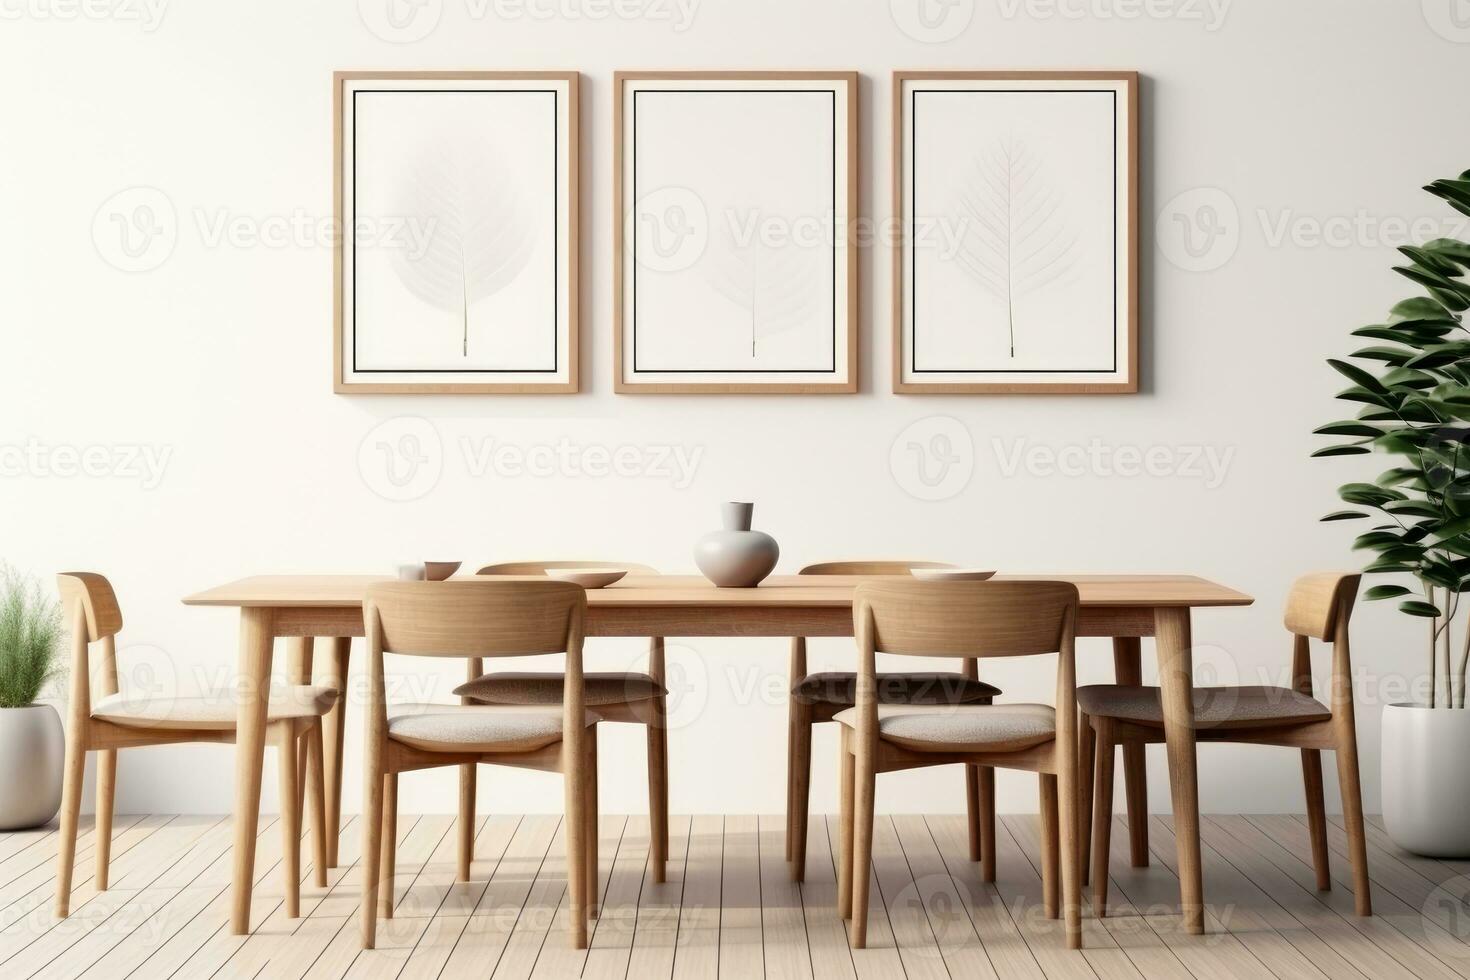 das Innere von ein modern Küche und Leben Zimmer mit ein Essen Tabelle und Frames auf das Mauer. generiert durch künstlich Intelligenz foto